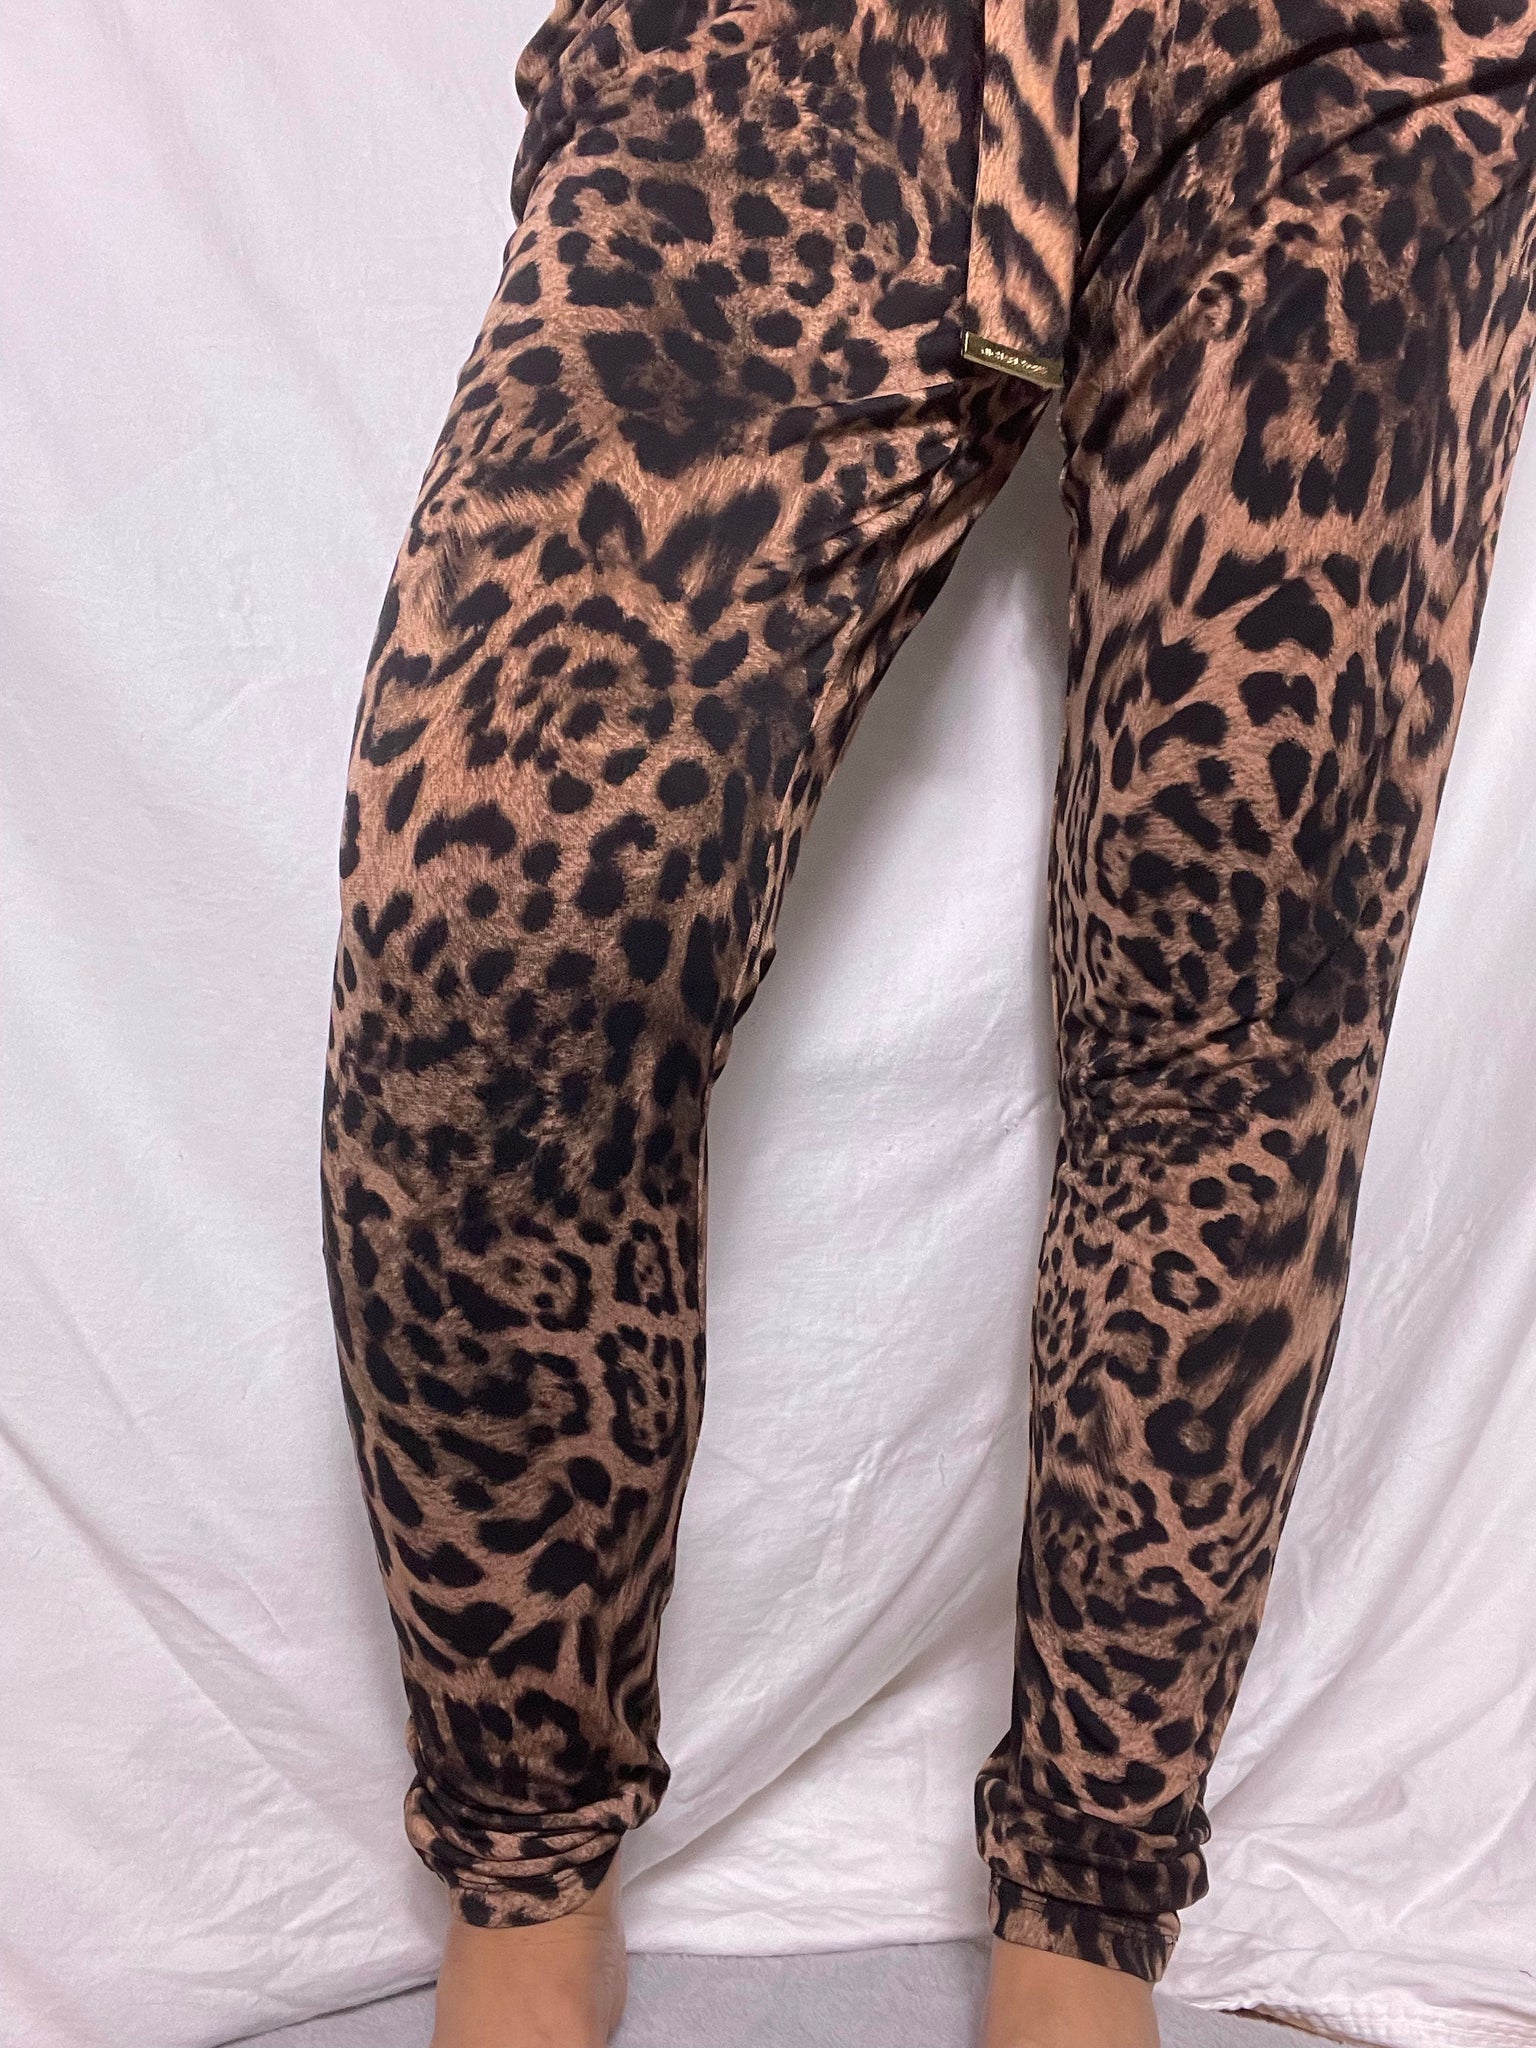 NEW Michael Kors leopard jumpsuit, Size M – Holy Ogre